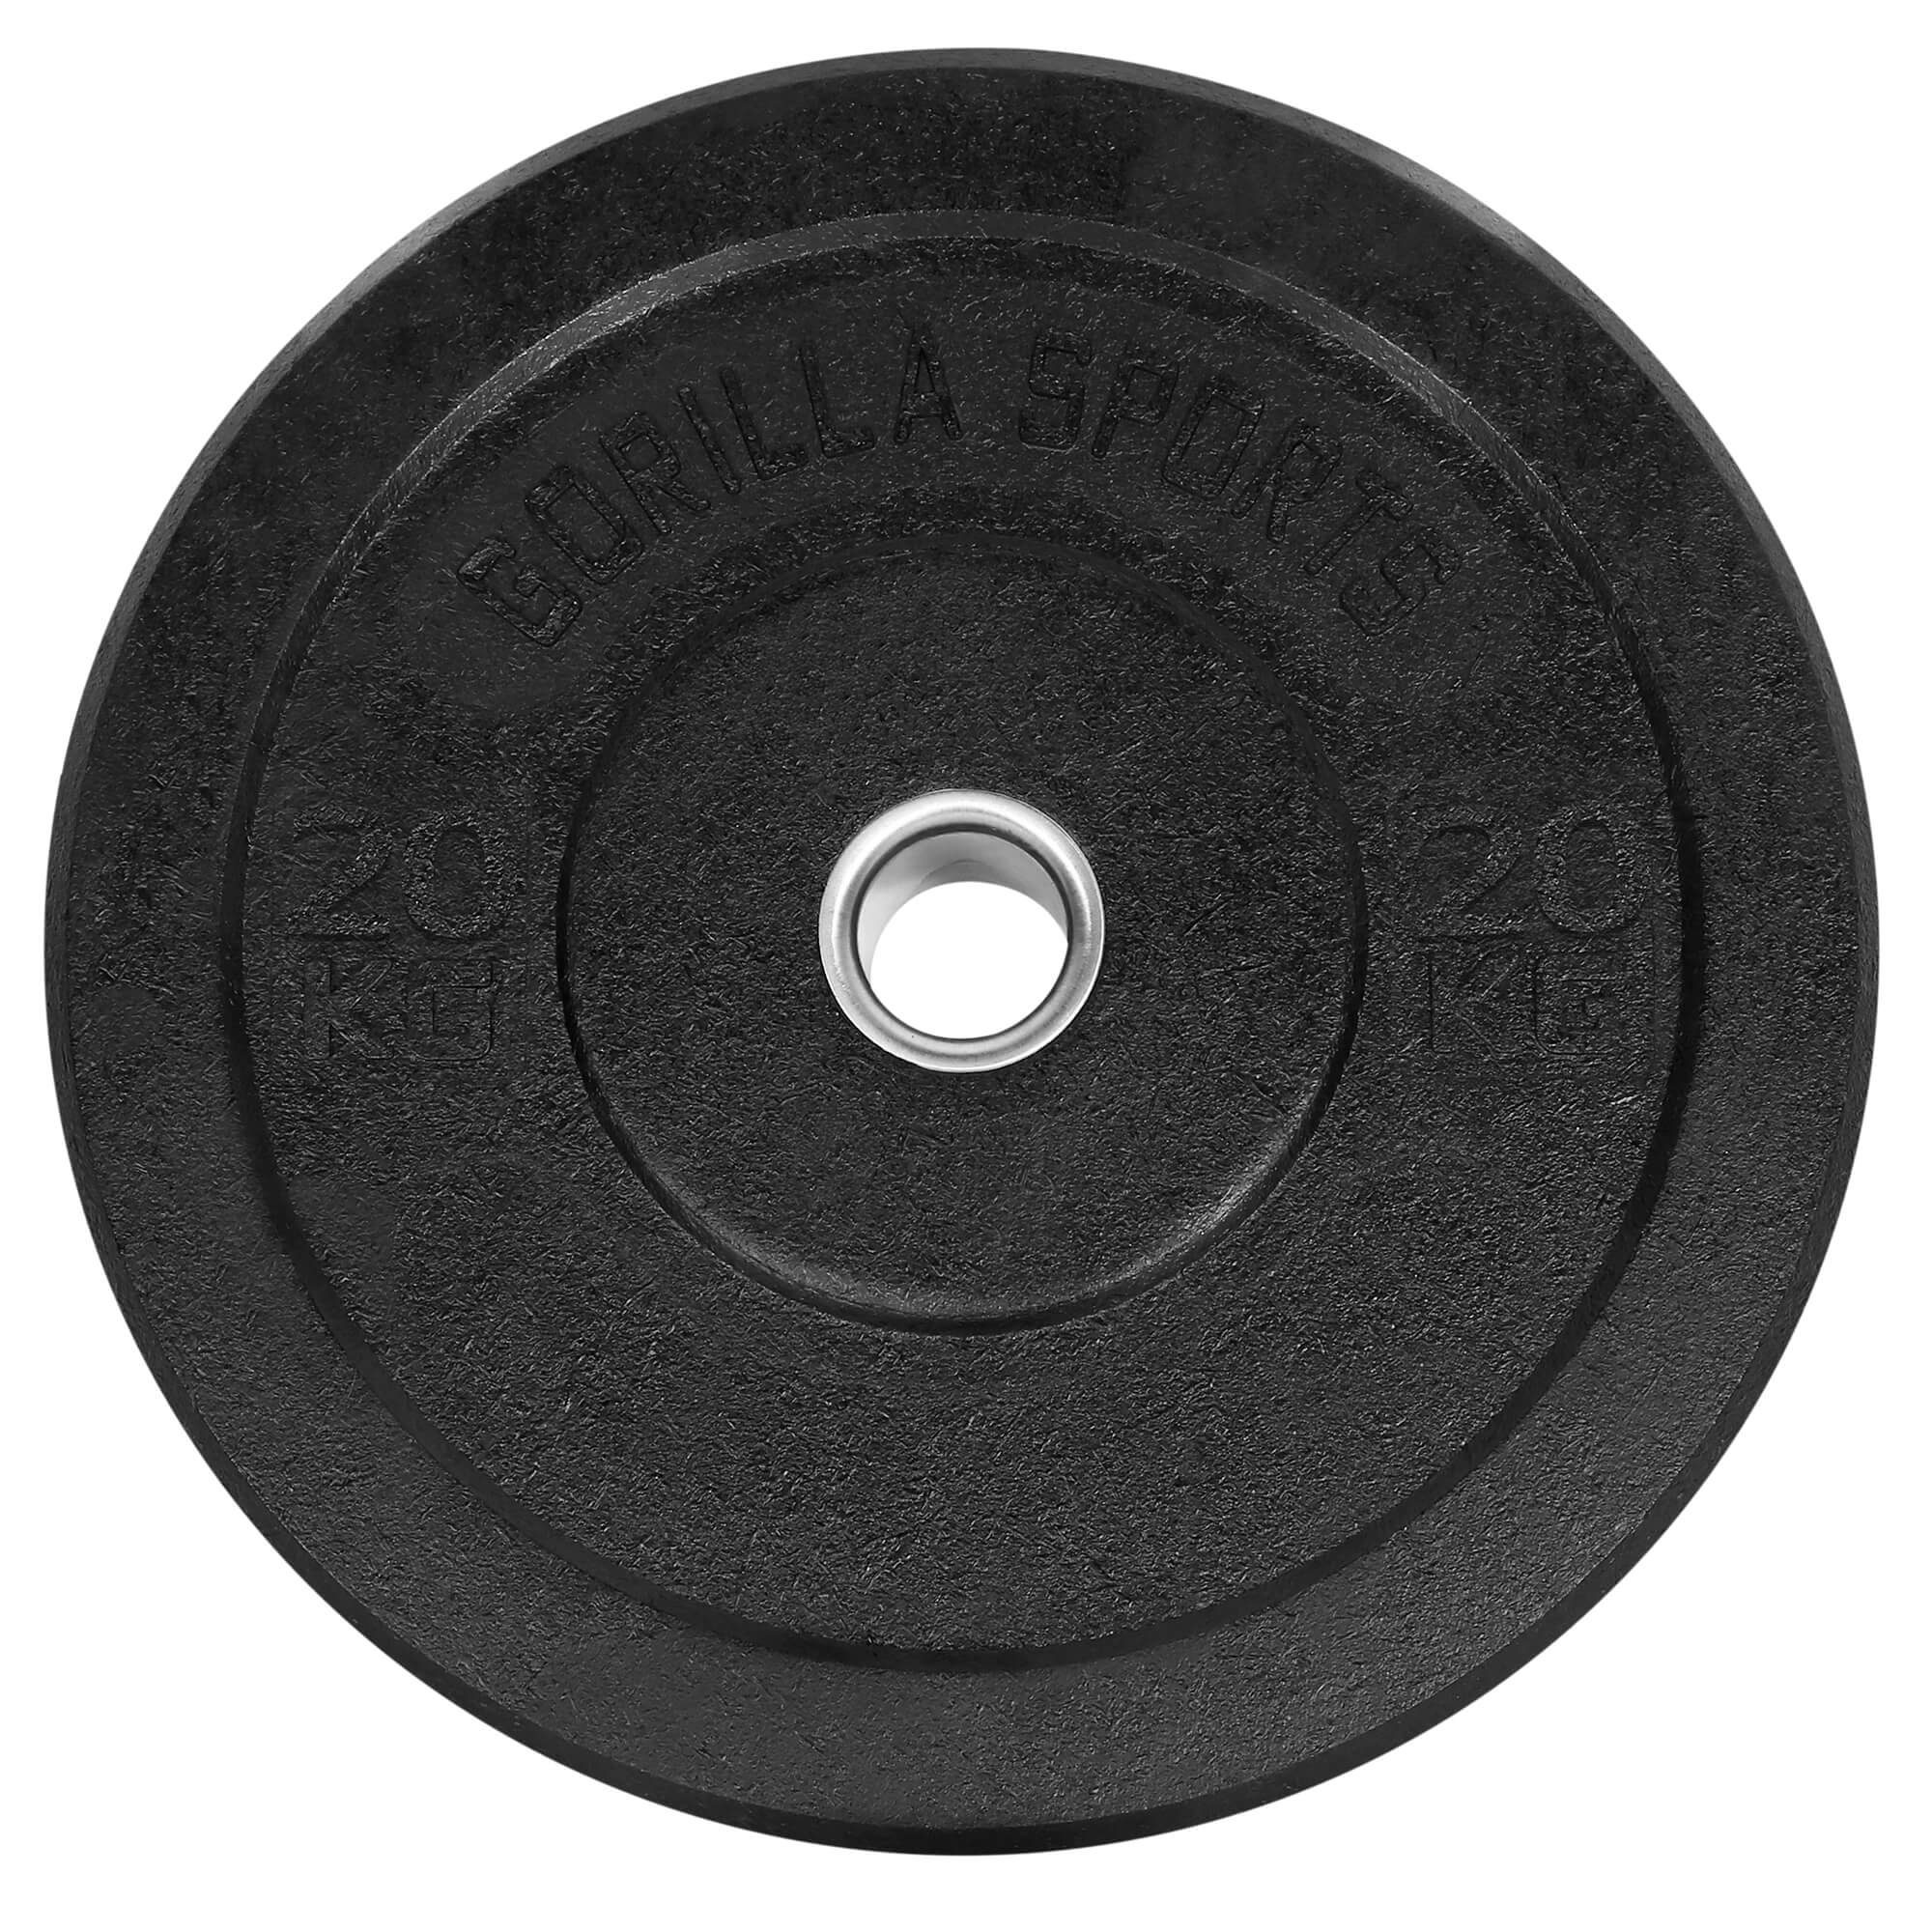 2x20k GORILLA SPORTS Set Gewichte,Einzeln/Set,Bumper Plates,Gewichtsscheiben Olympia,5-50kg Hantelscheiben